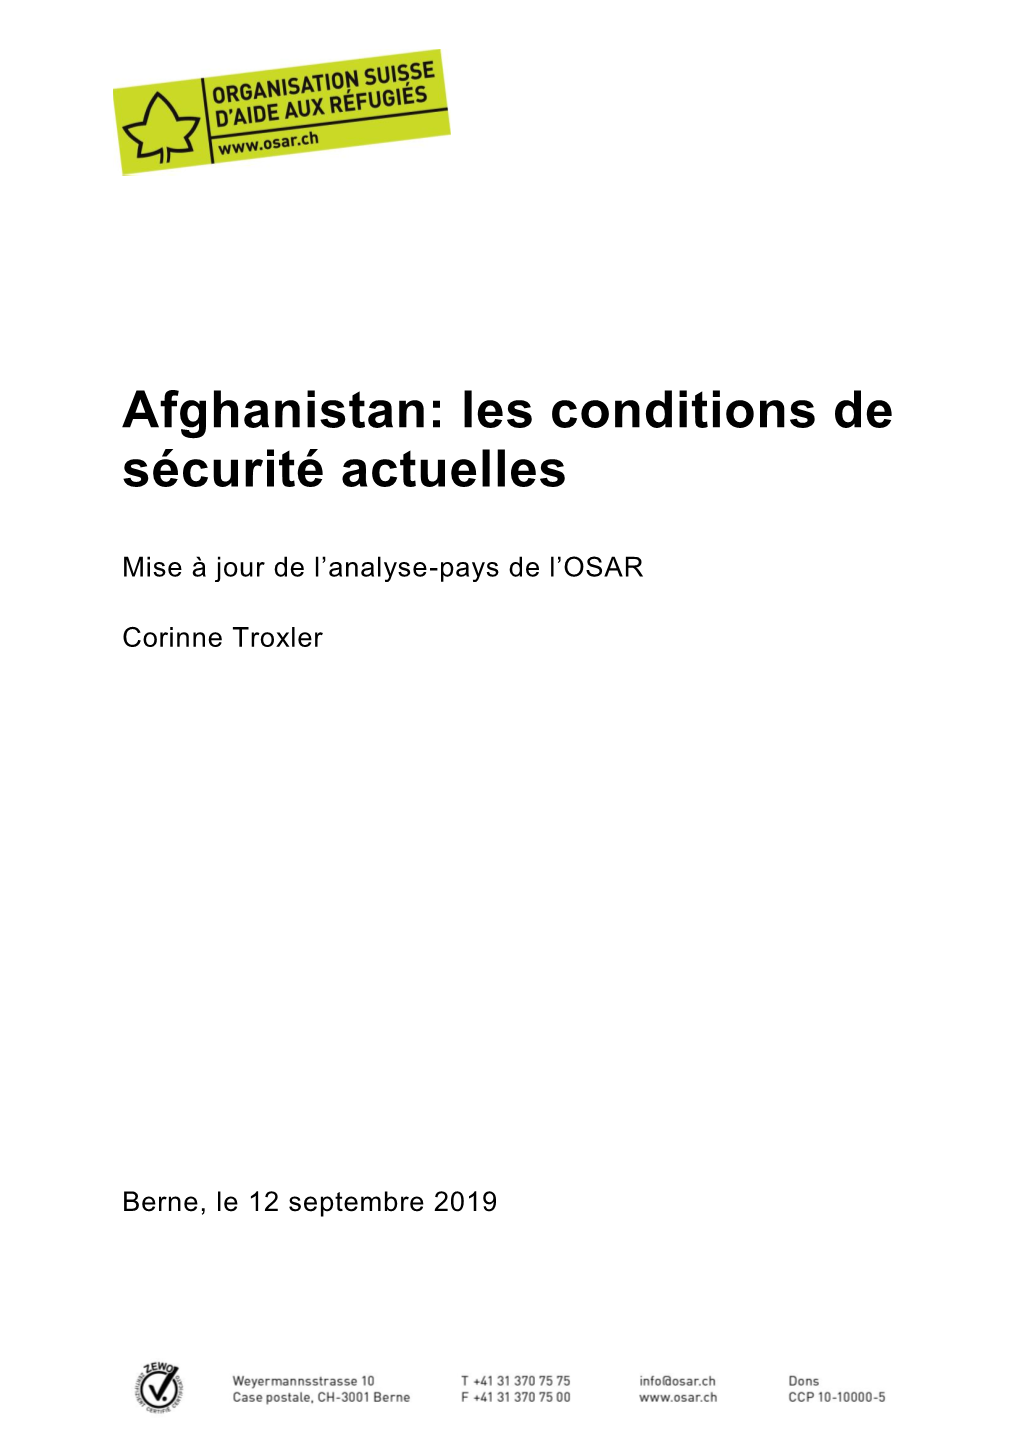 Afghanistan: Les Conditions De Sécurité Actuelles